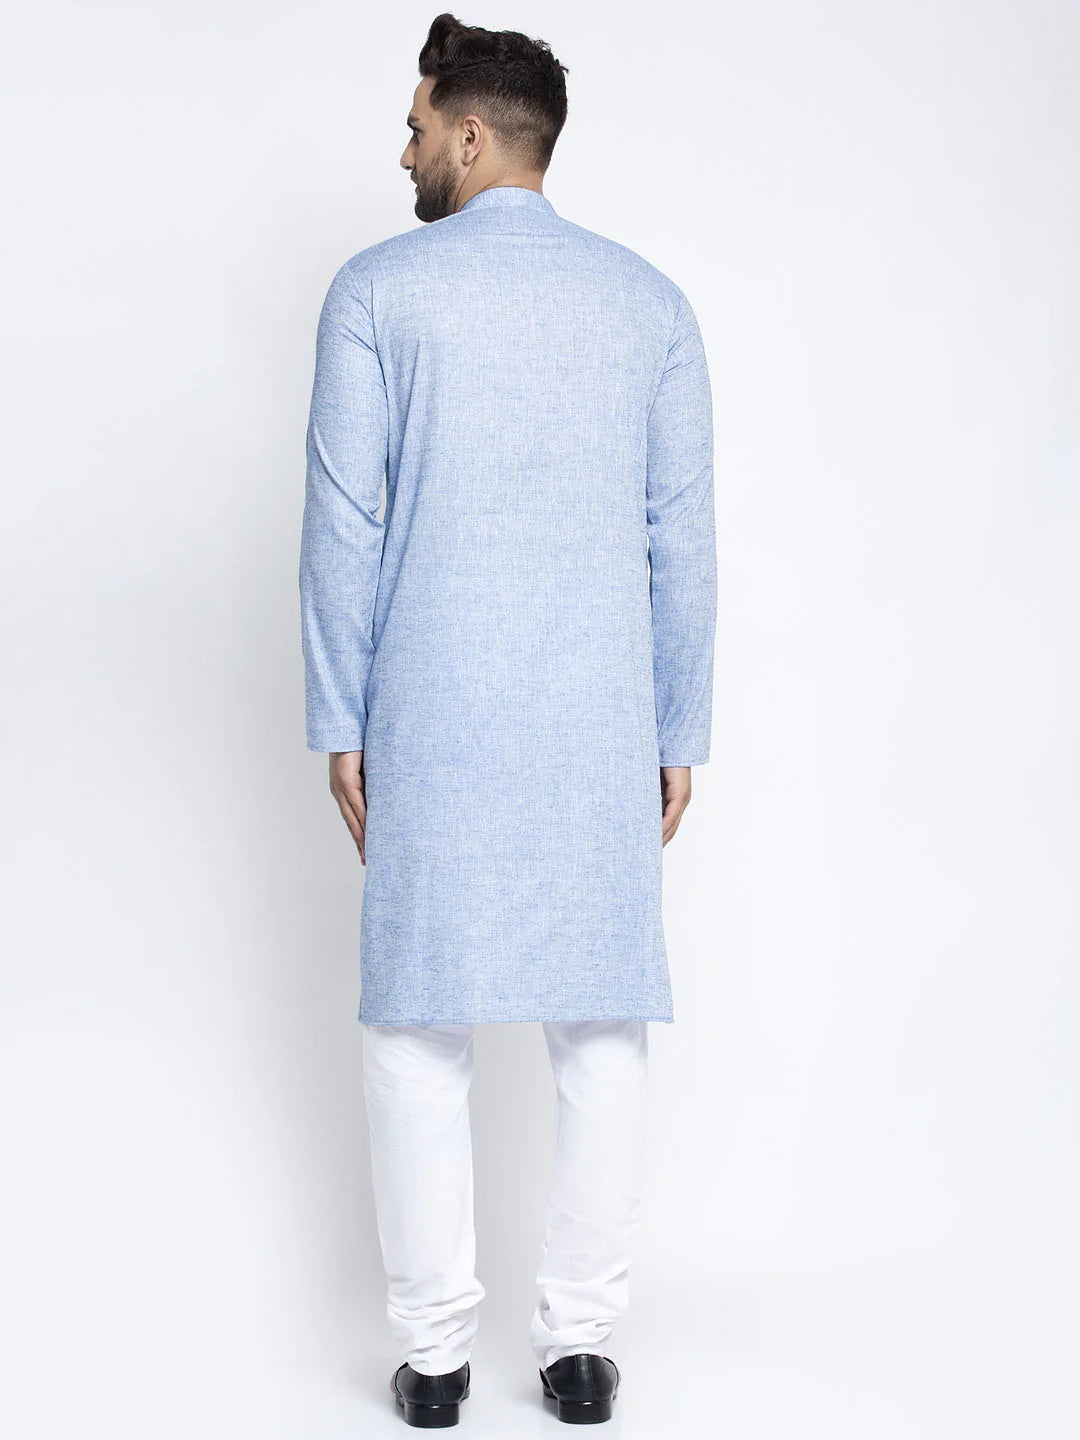 Jompers Men Blue & White Self Design Kurta with Pyjamas ( JOKP 638 Sky )